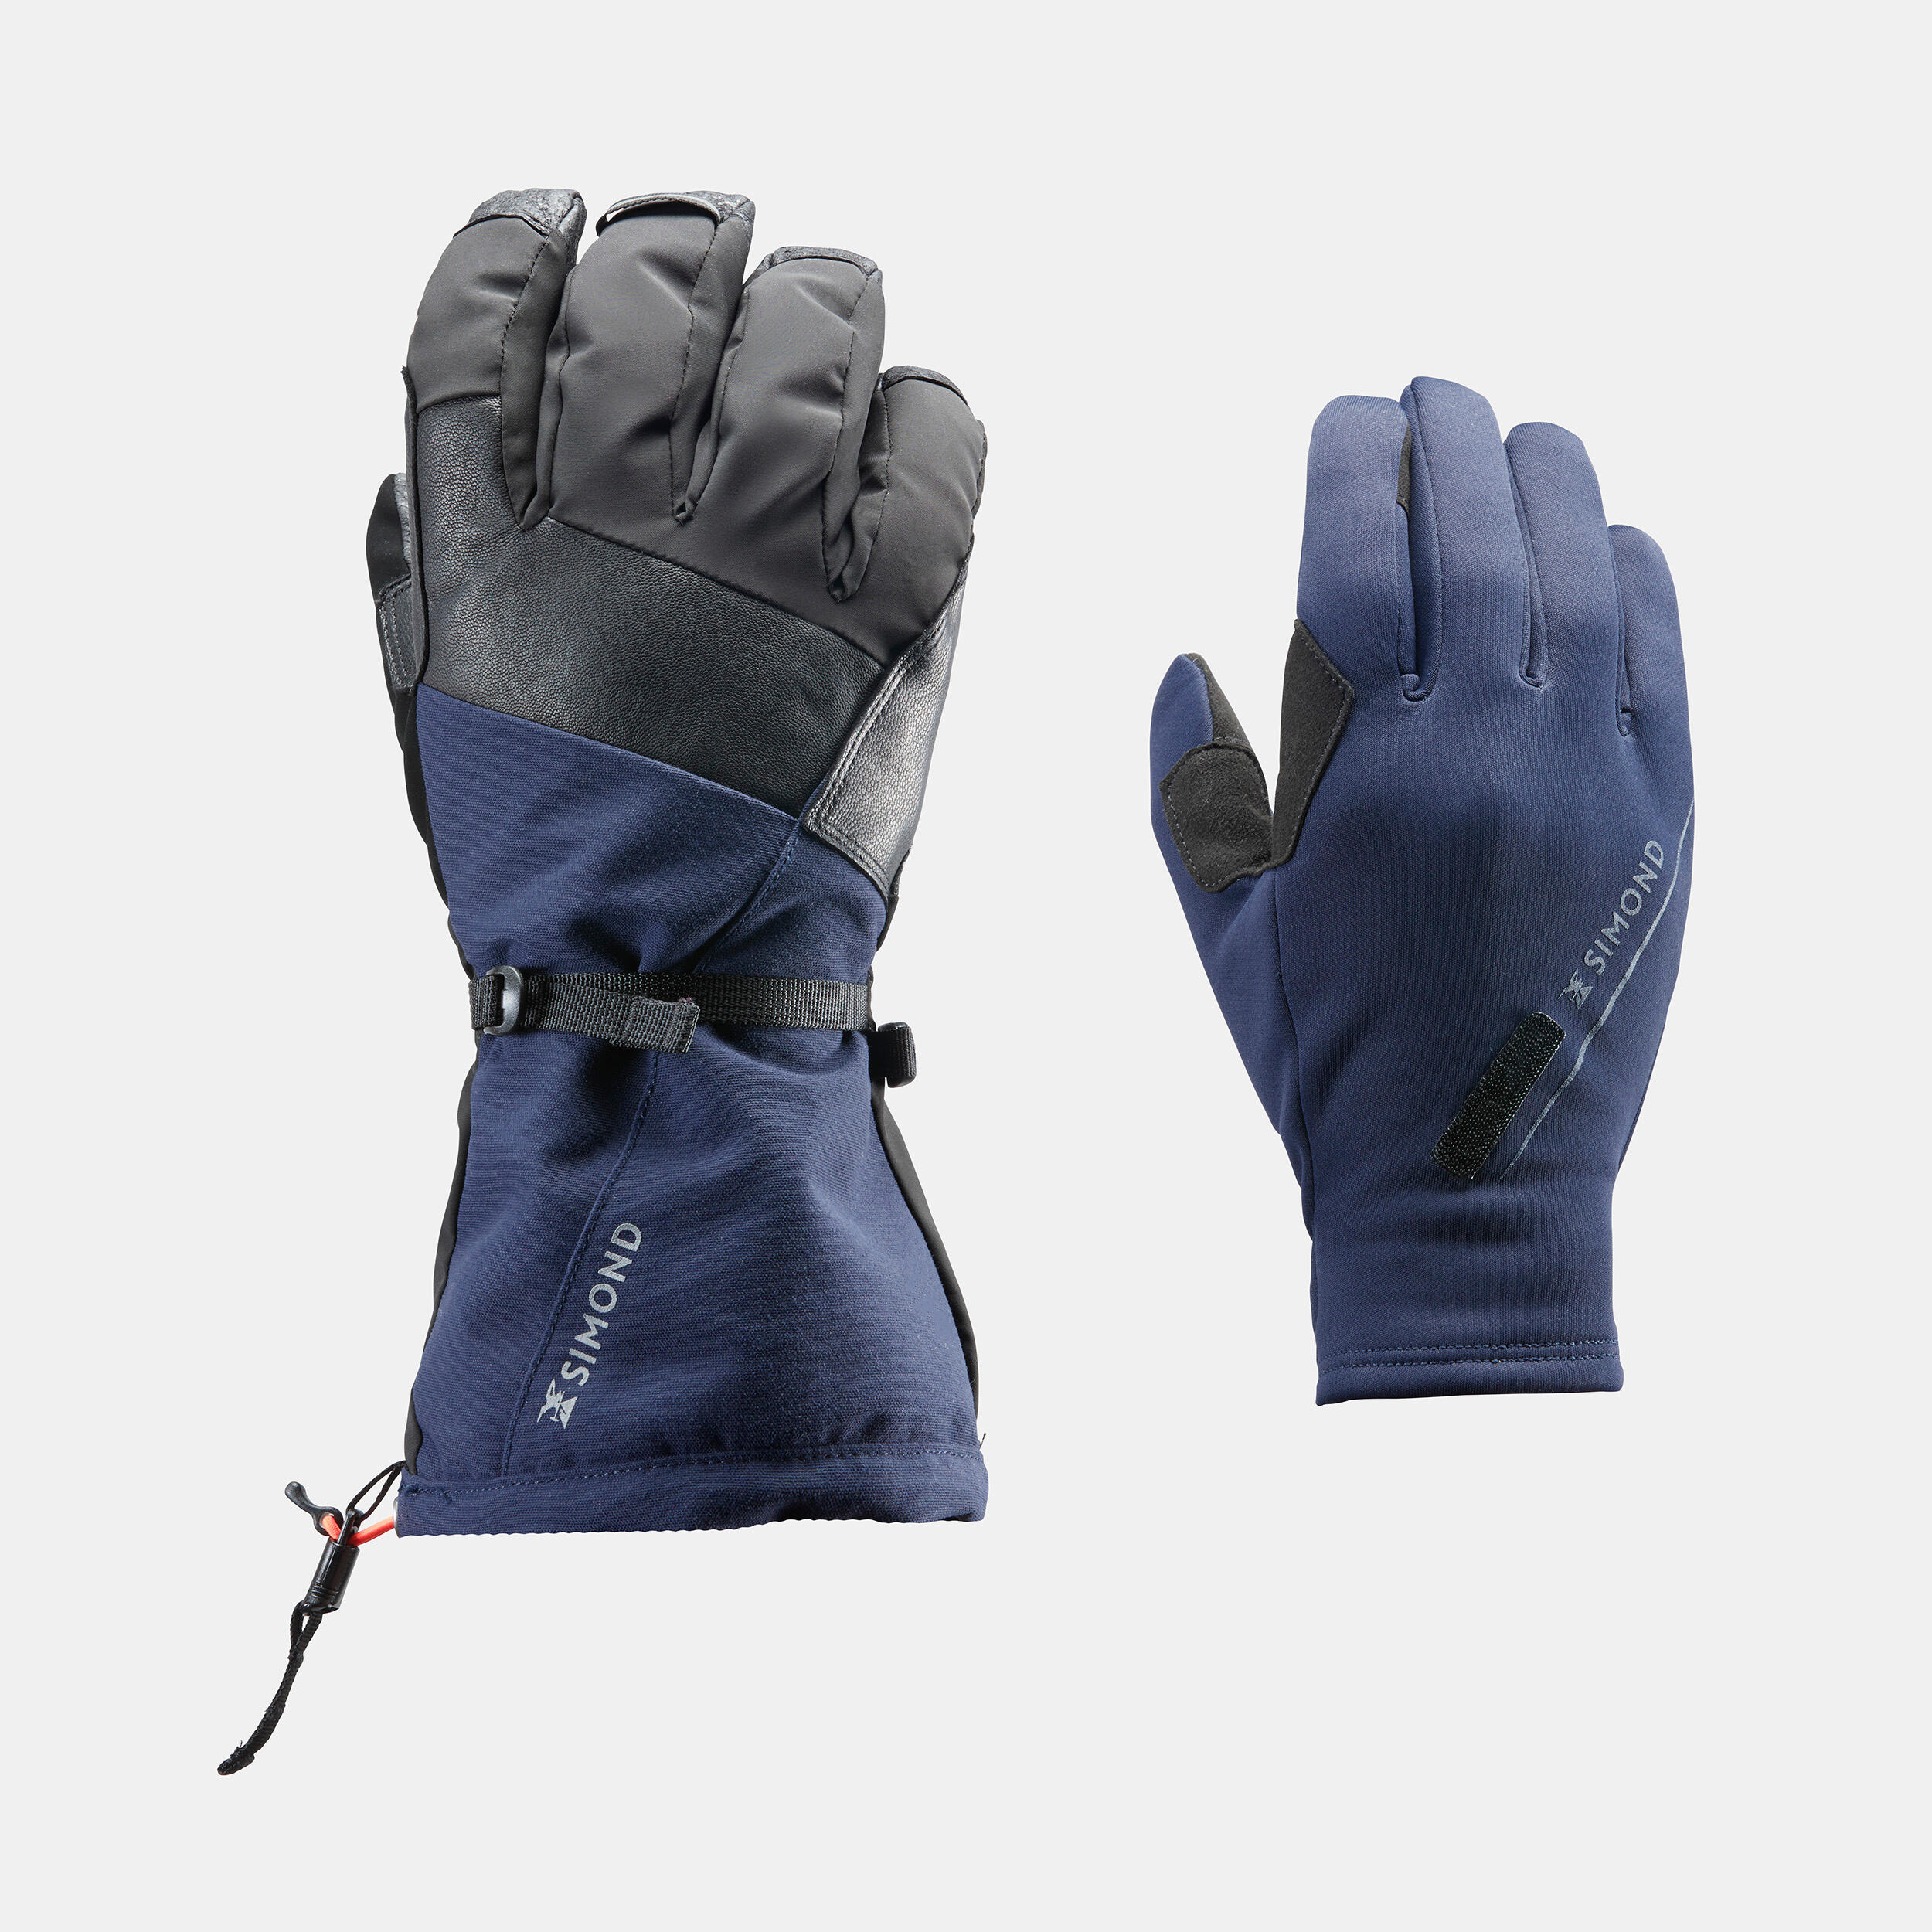 2-in-1 waterproof mountaineering gloves, black 4/9